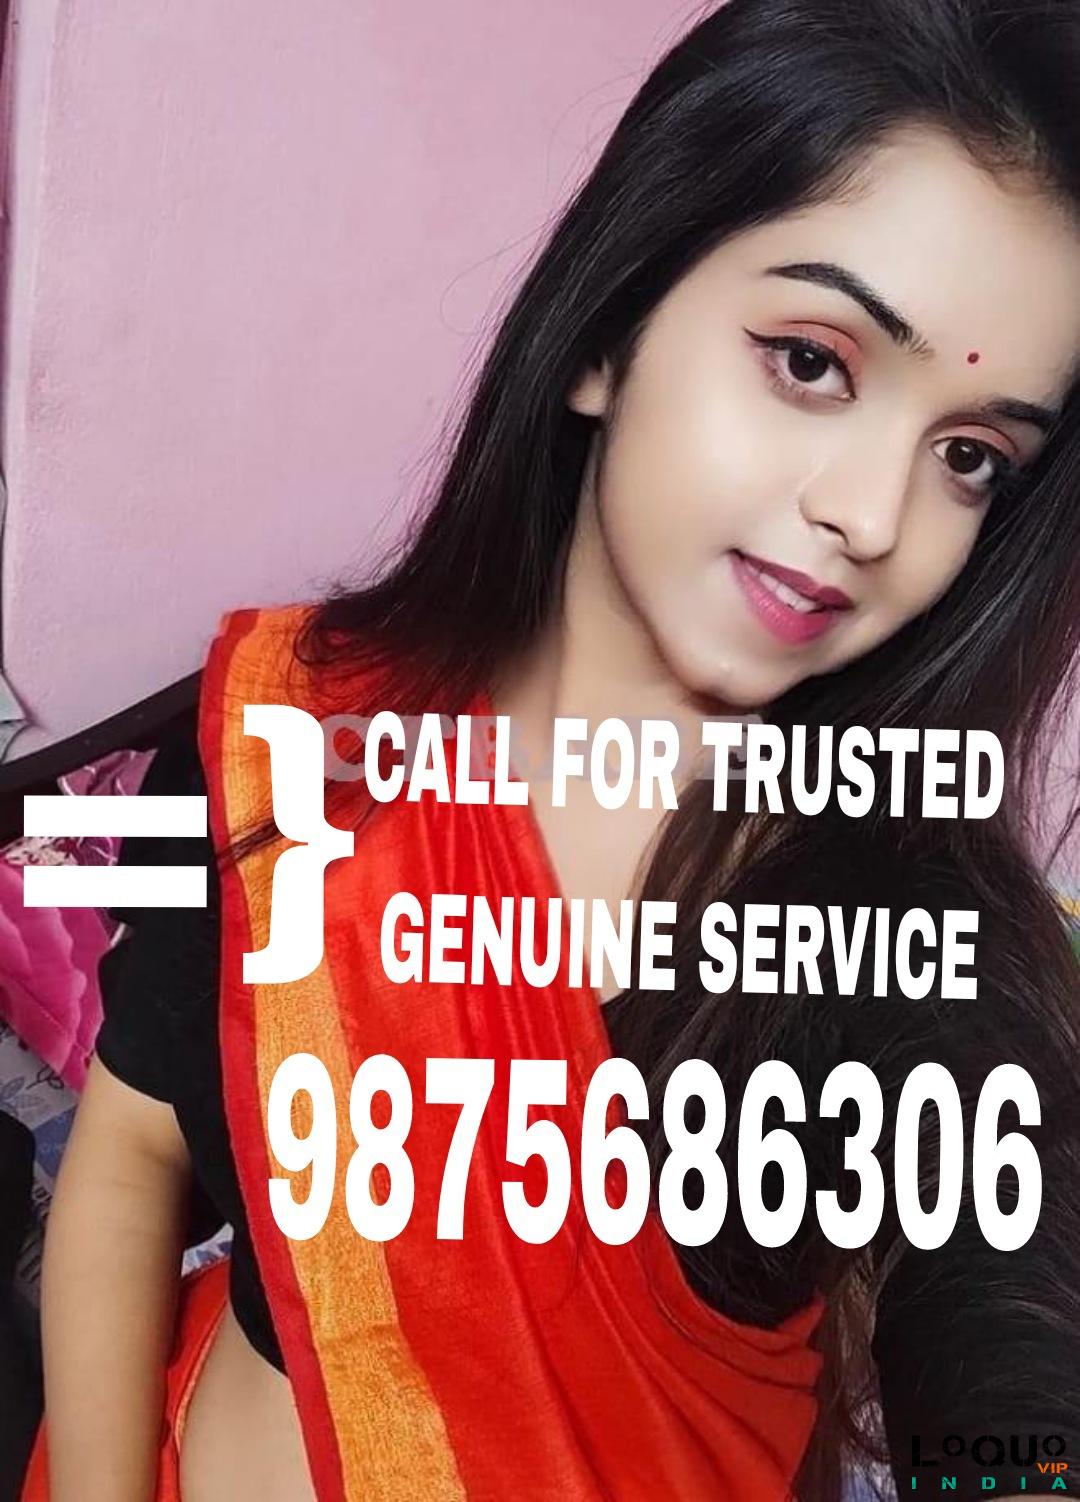 Call Girls Uttarakhand: NAINITAL ❤CALL GIRL 98756*86306 ❤CALL GIRLS IN ESCORT SERVICE❤